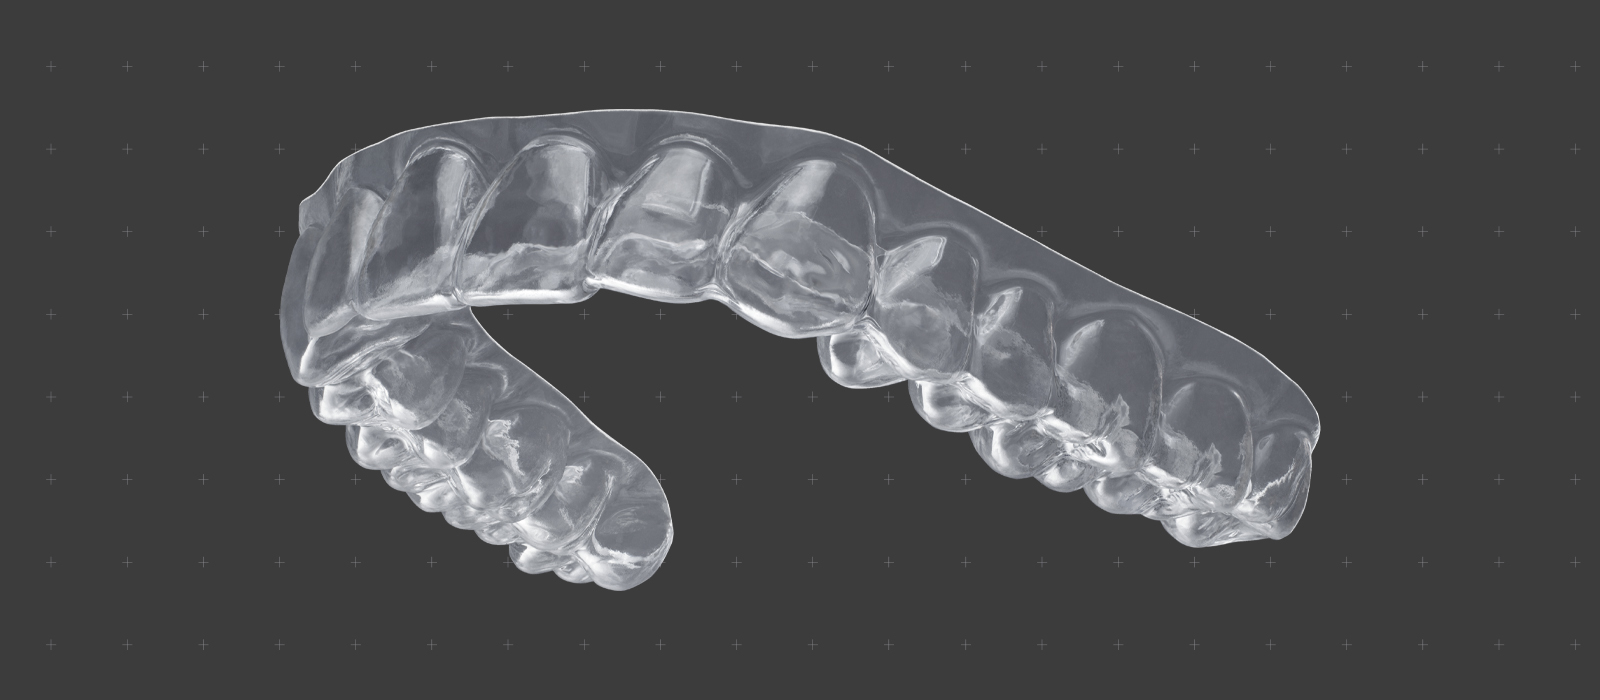 دندان سازی - آرتھوڈانٹک آلات کے لیے ڈایافرام